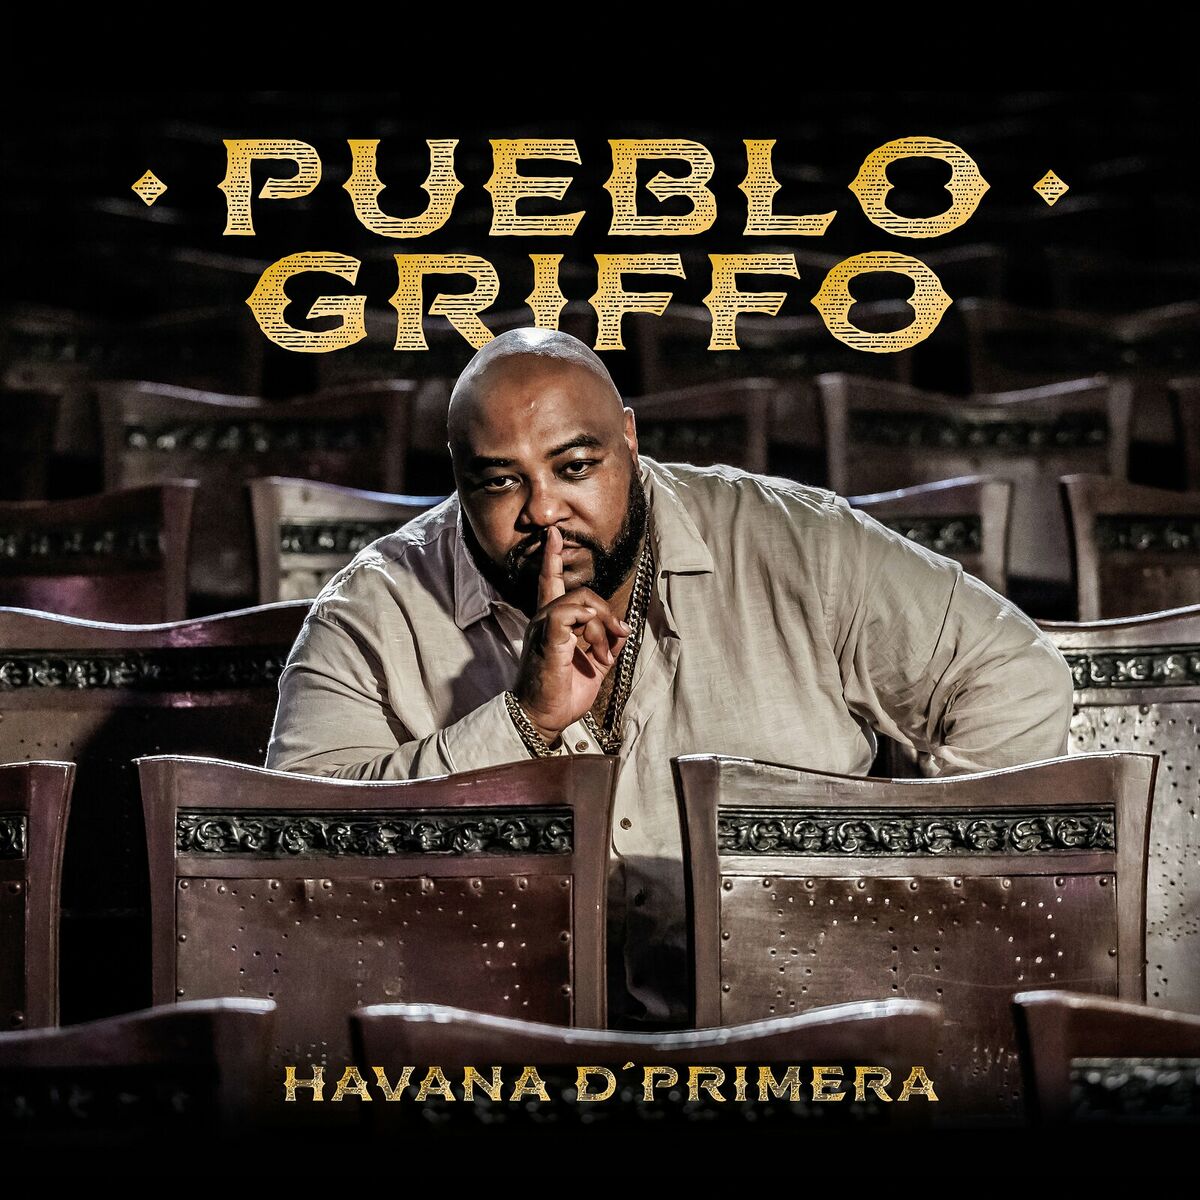 Ascolta tutta la musica di Alexander Abreu Y Havana D' Primera 